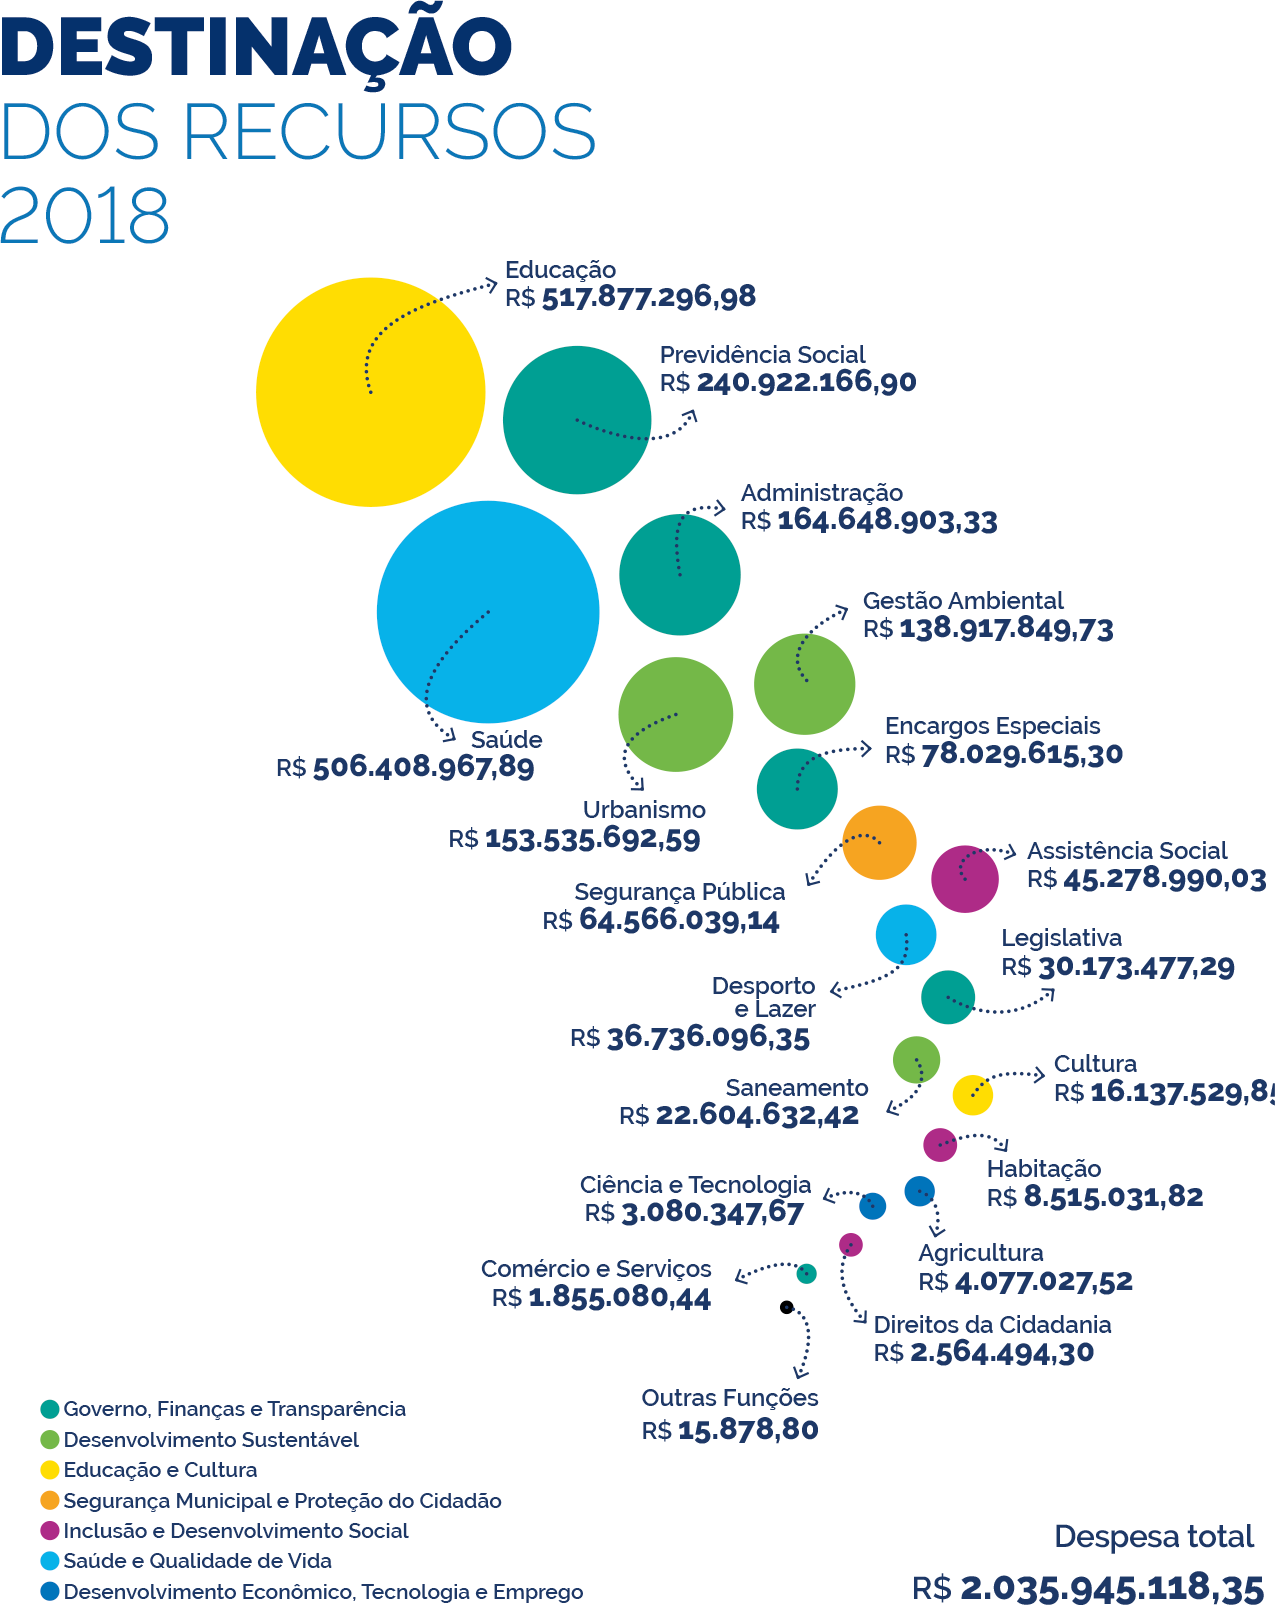 Gráfico com a destinação dos recursos em 2018